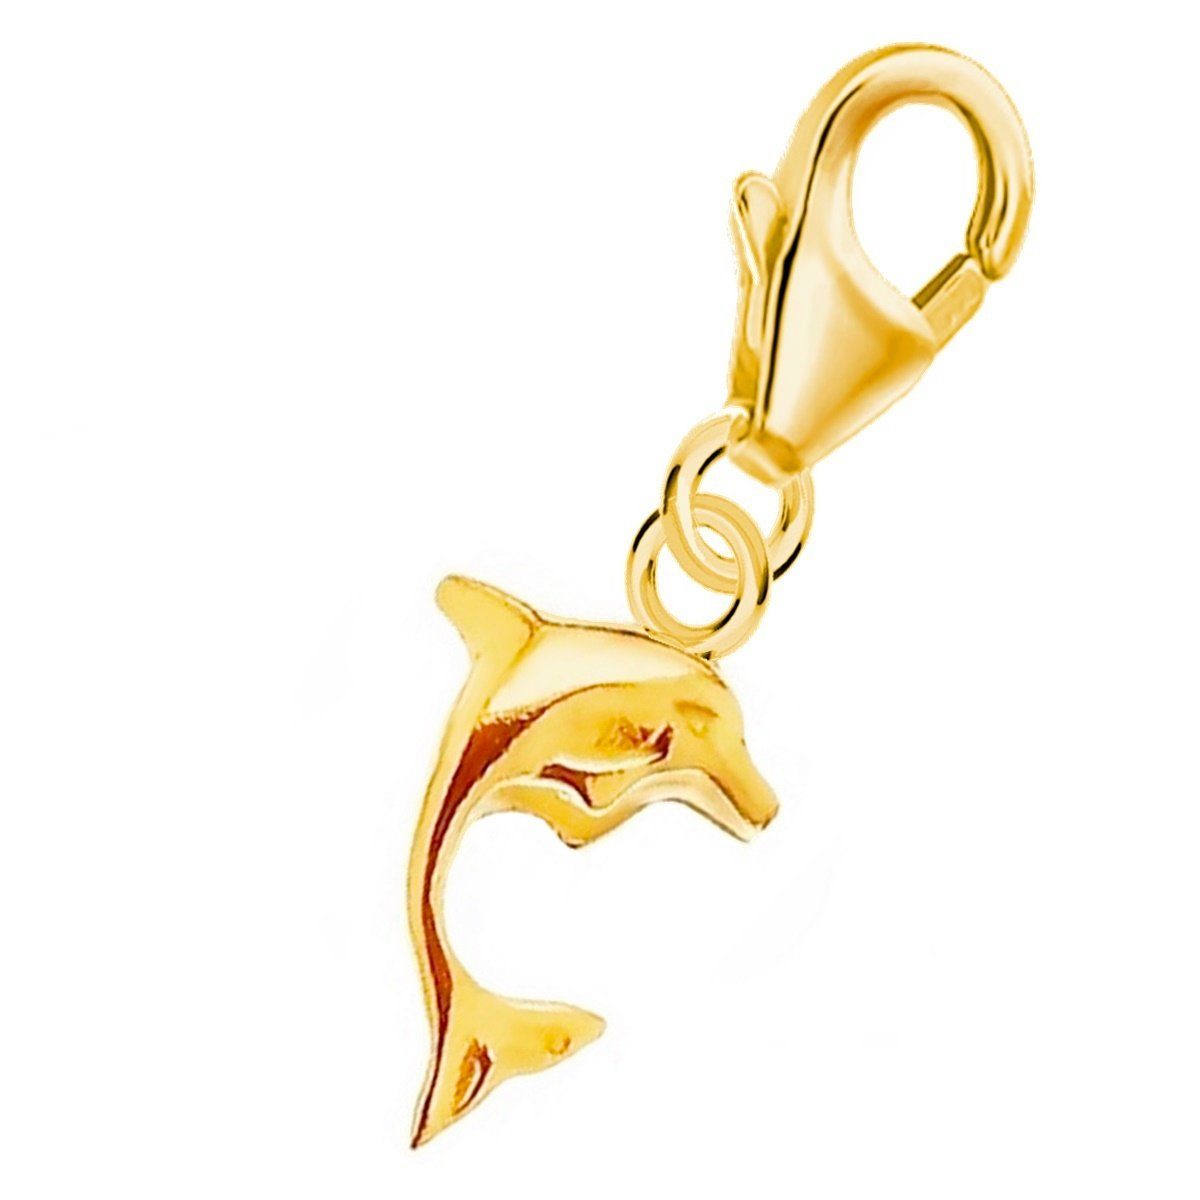 Beliebte Artikel diese Woche Goldene Hufeisen Charm-Einhänger Delphin Karabiner Vergoldet Bettelarmband Charm für Silber Gliederarmband Halskette Anhänger 925 Etui), (inkl. oder